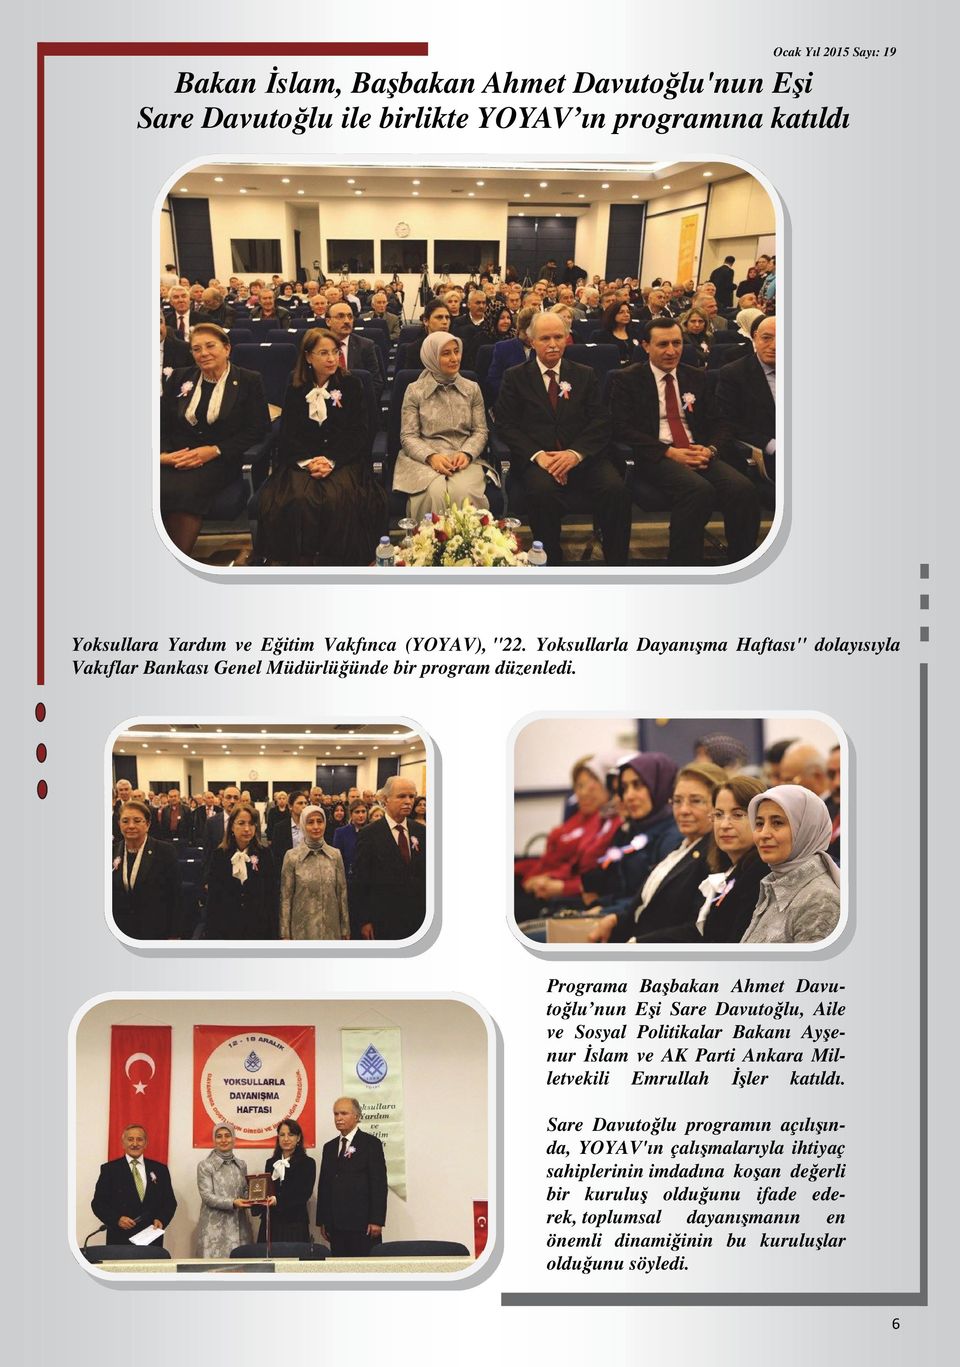 Programa Başbakan Ahmet Davutoğlu nun Eşi Sare Davutoğlu, Aile ve Sosyal Politikalar Bakanı Ayşenur İslam ve AK Parti Ankara Milletvekili Emrullah İşler